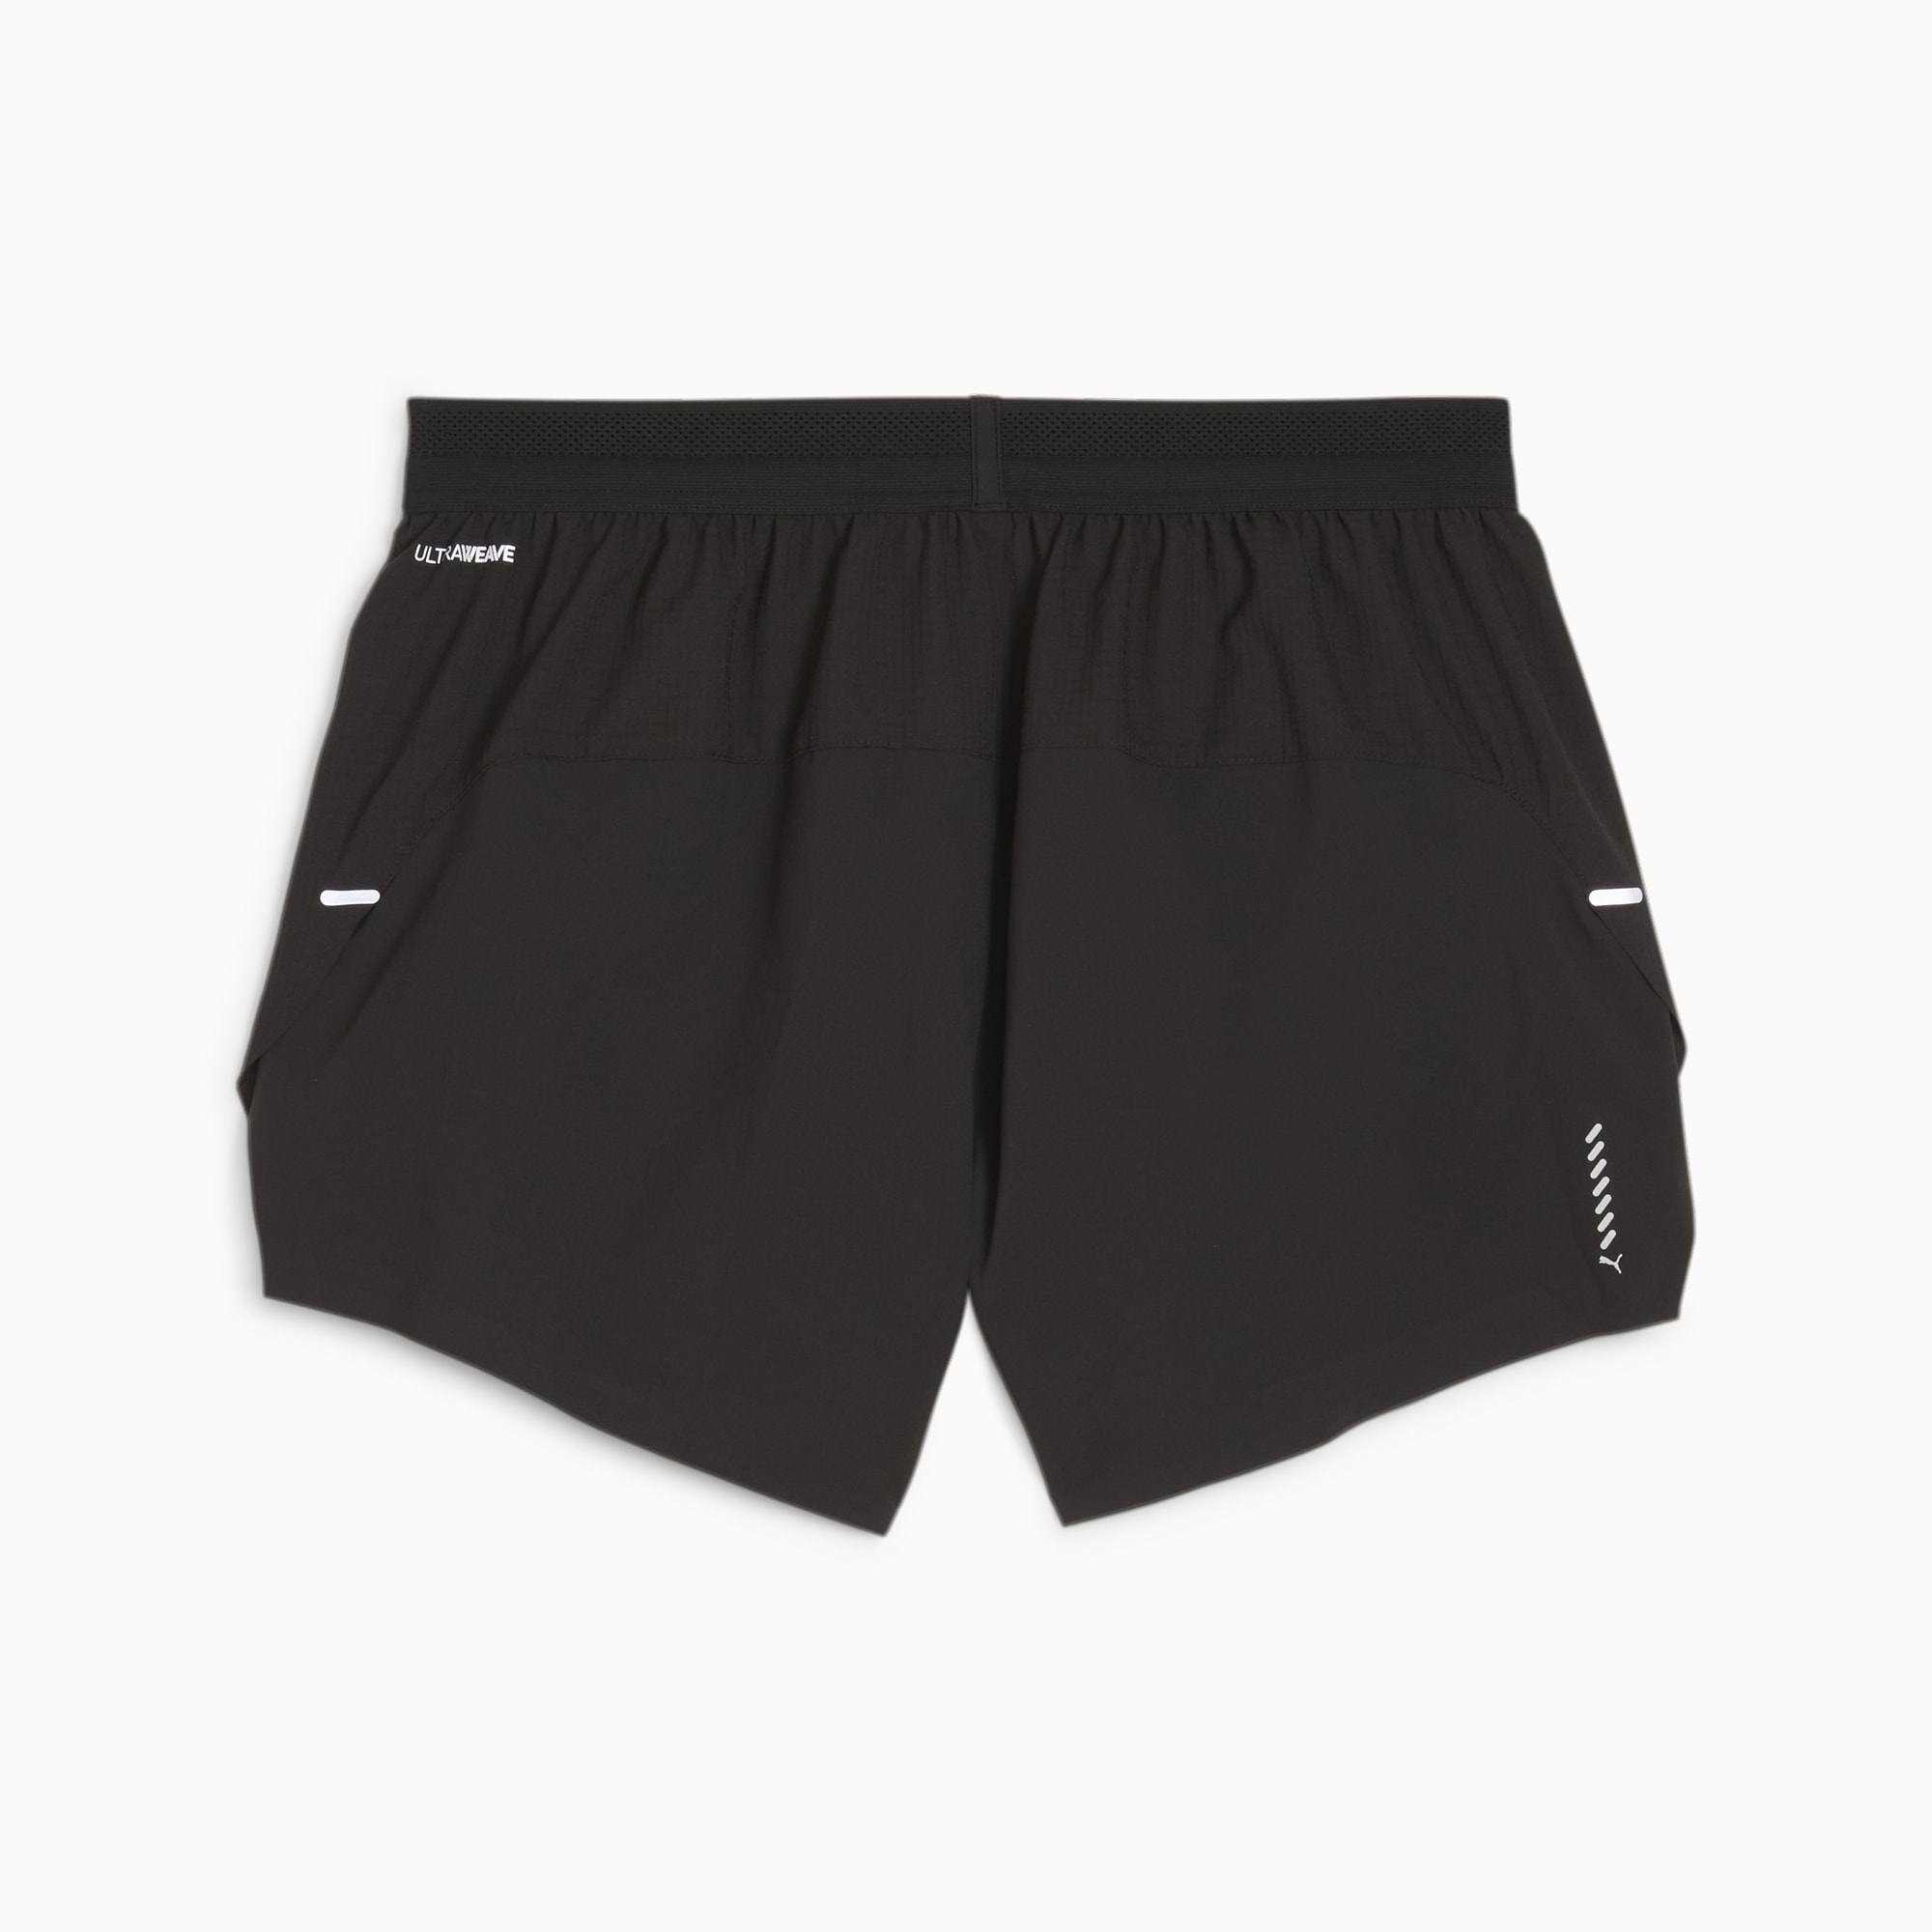 PUMA Run Velocity Men's 3 Running Shorts, Black, Size XS, Clothing